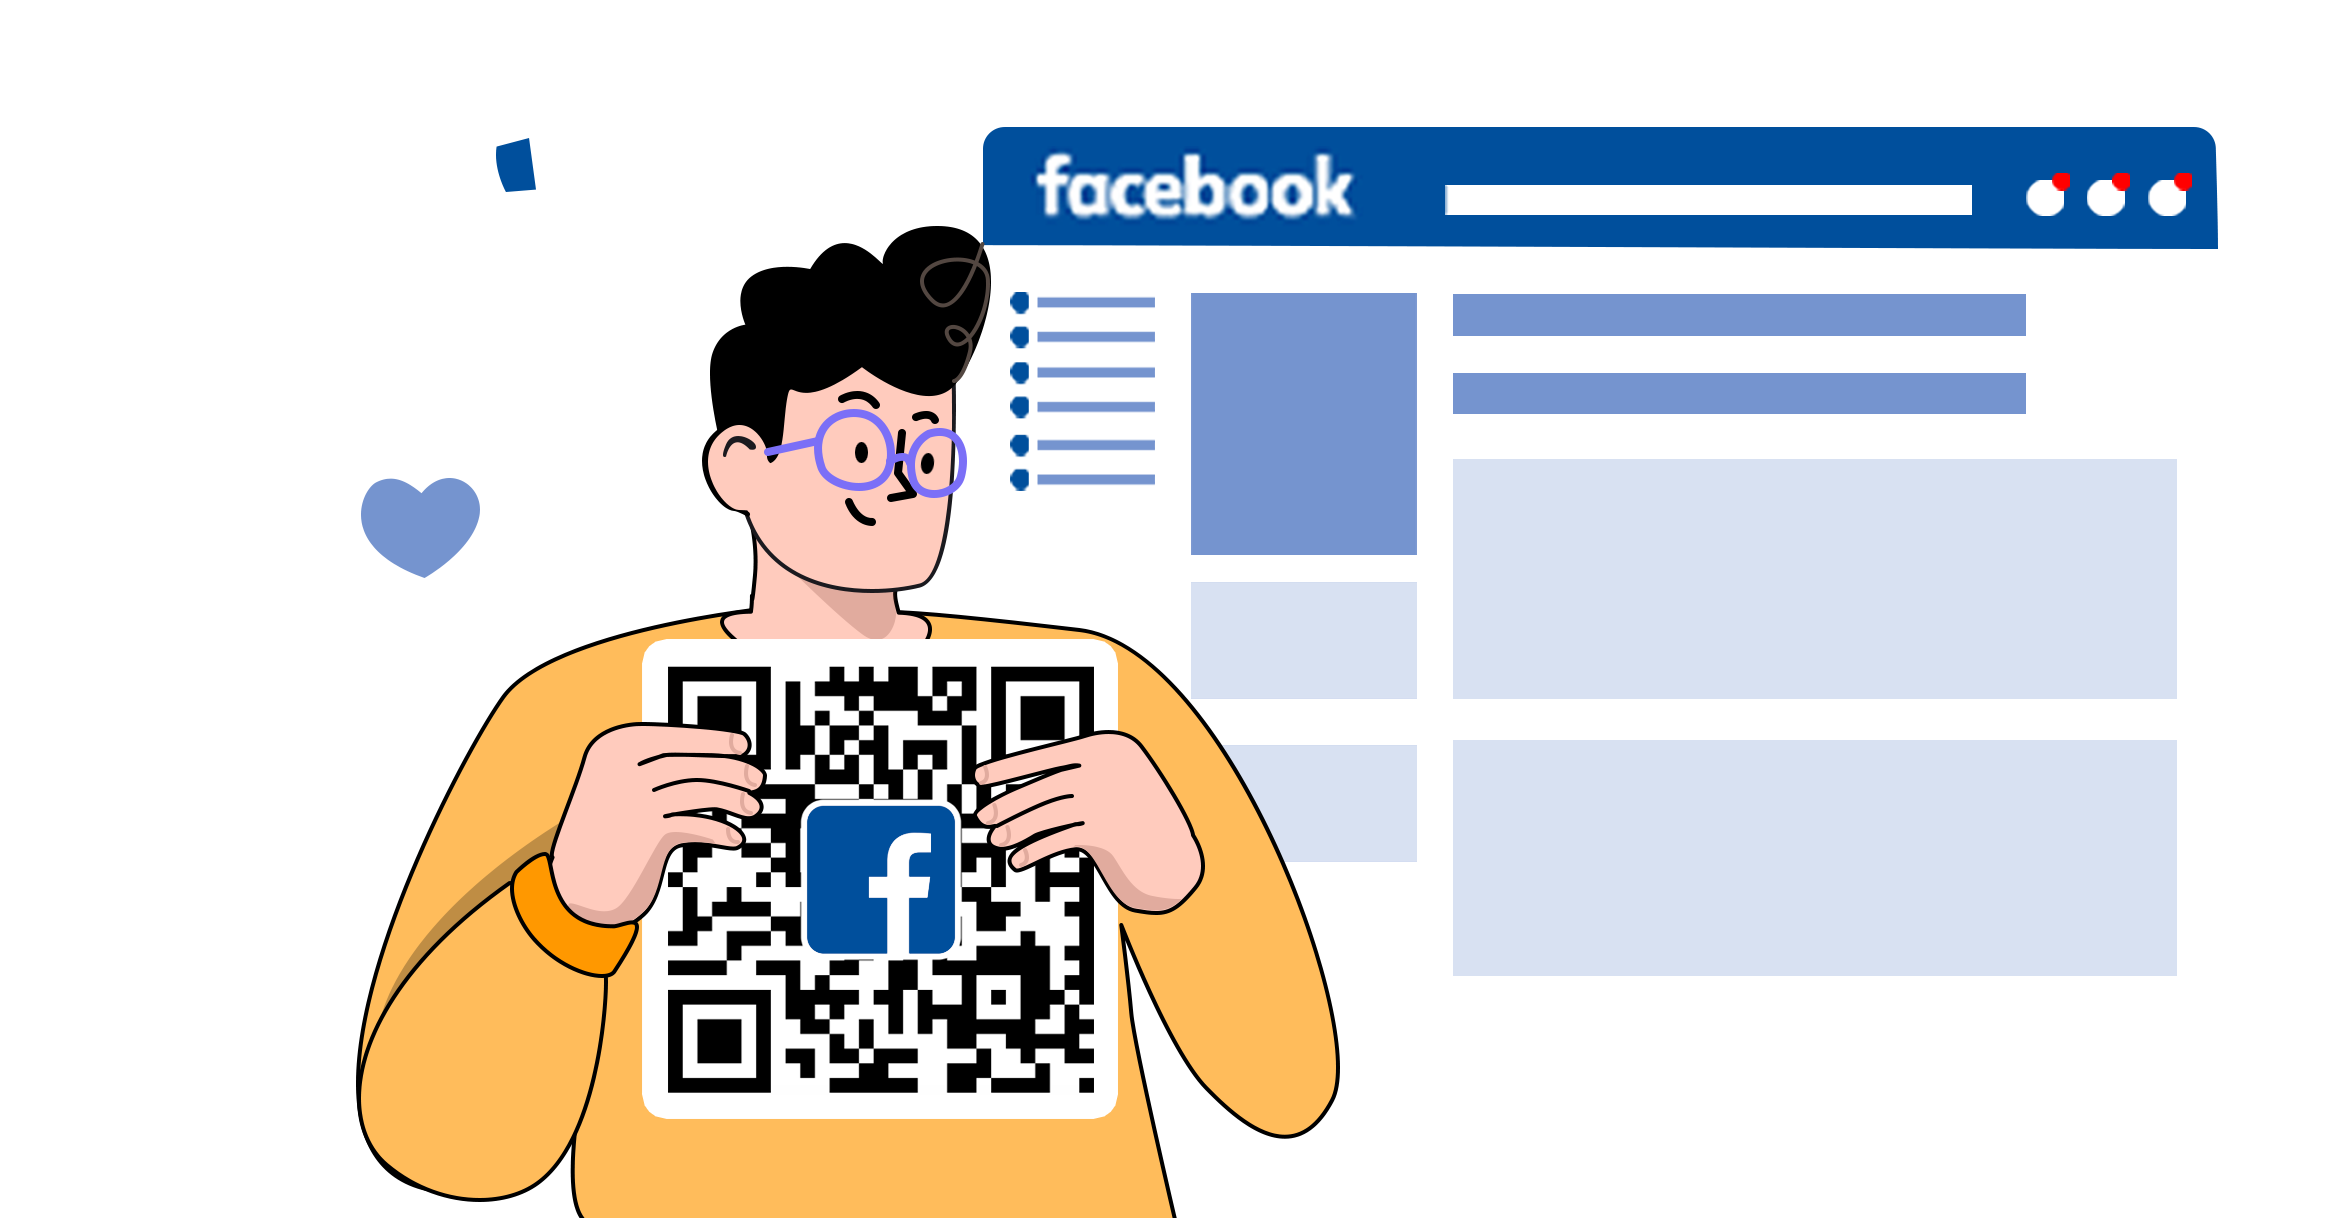 QR код для сторінки на фейсбук